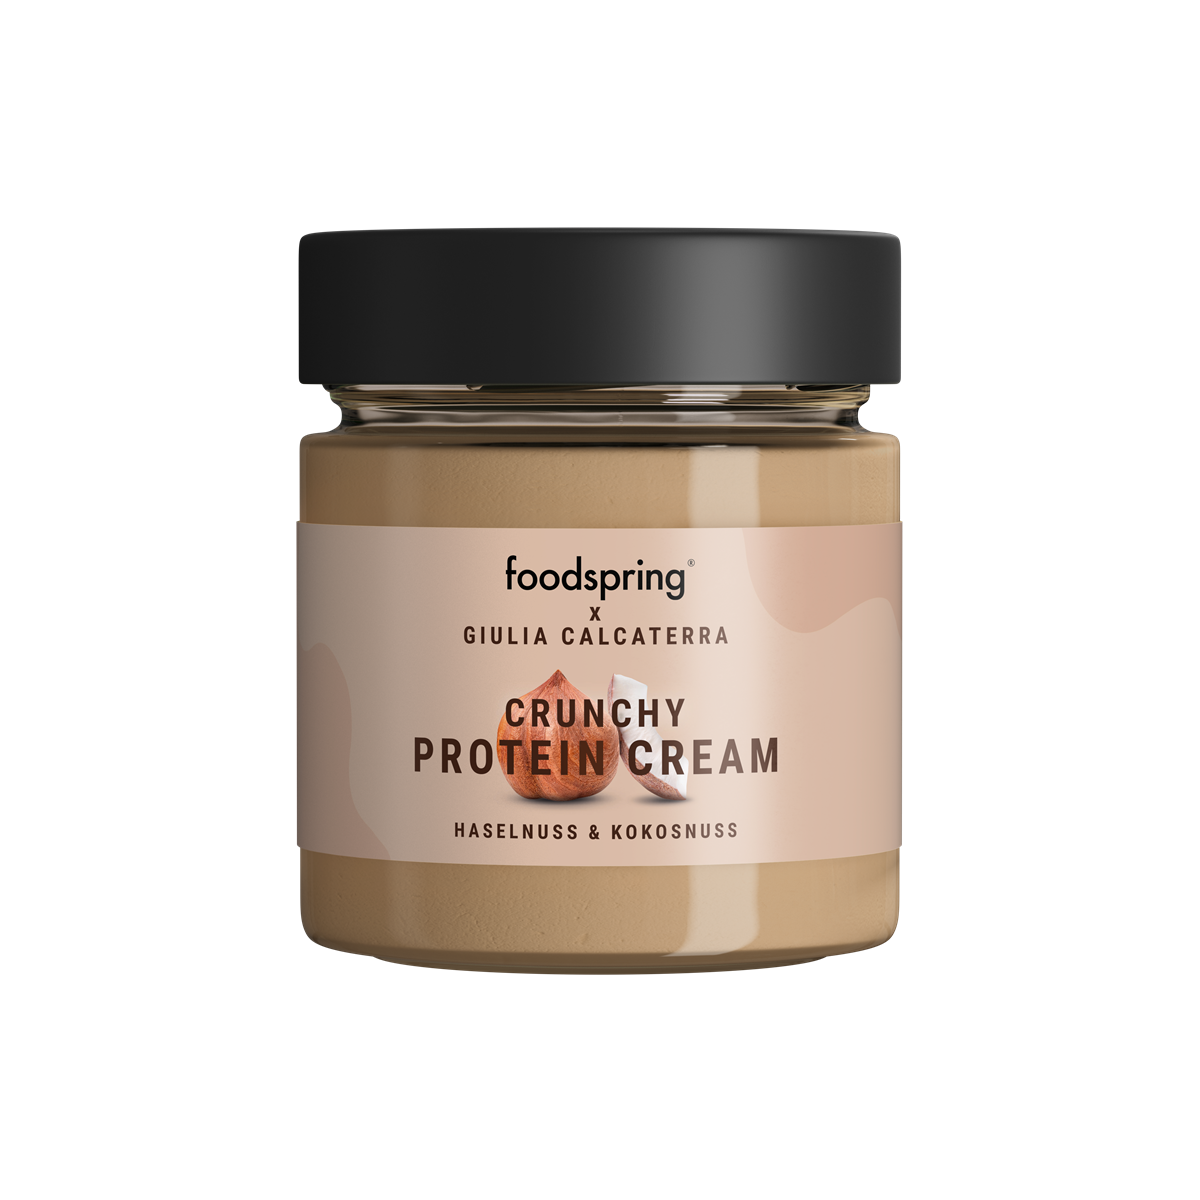 foodspring_Crunchy Protein Cream_Haselnuss Kokosnuss_EUR 4,99